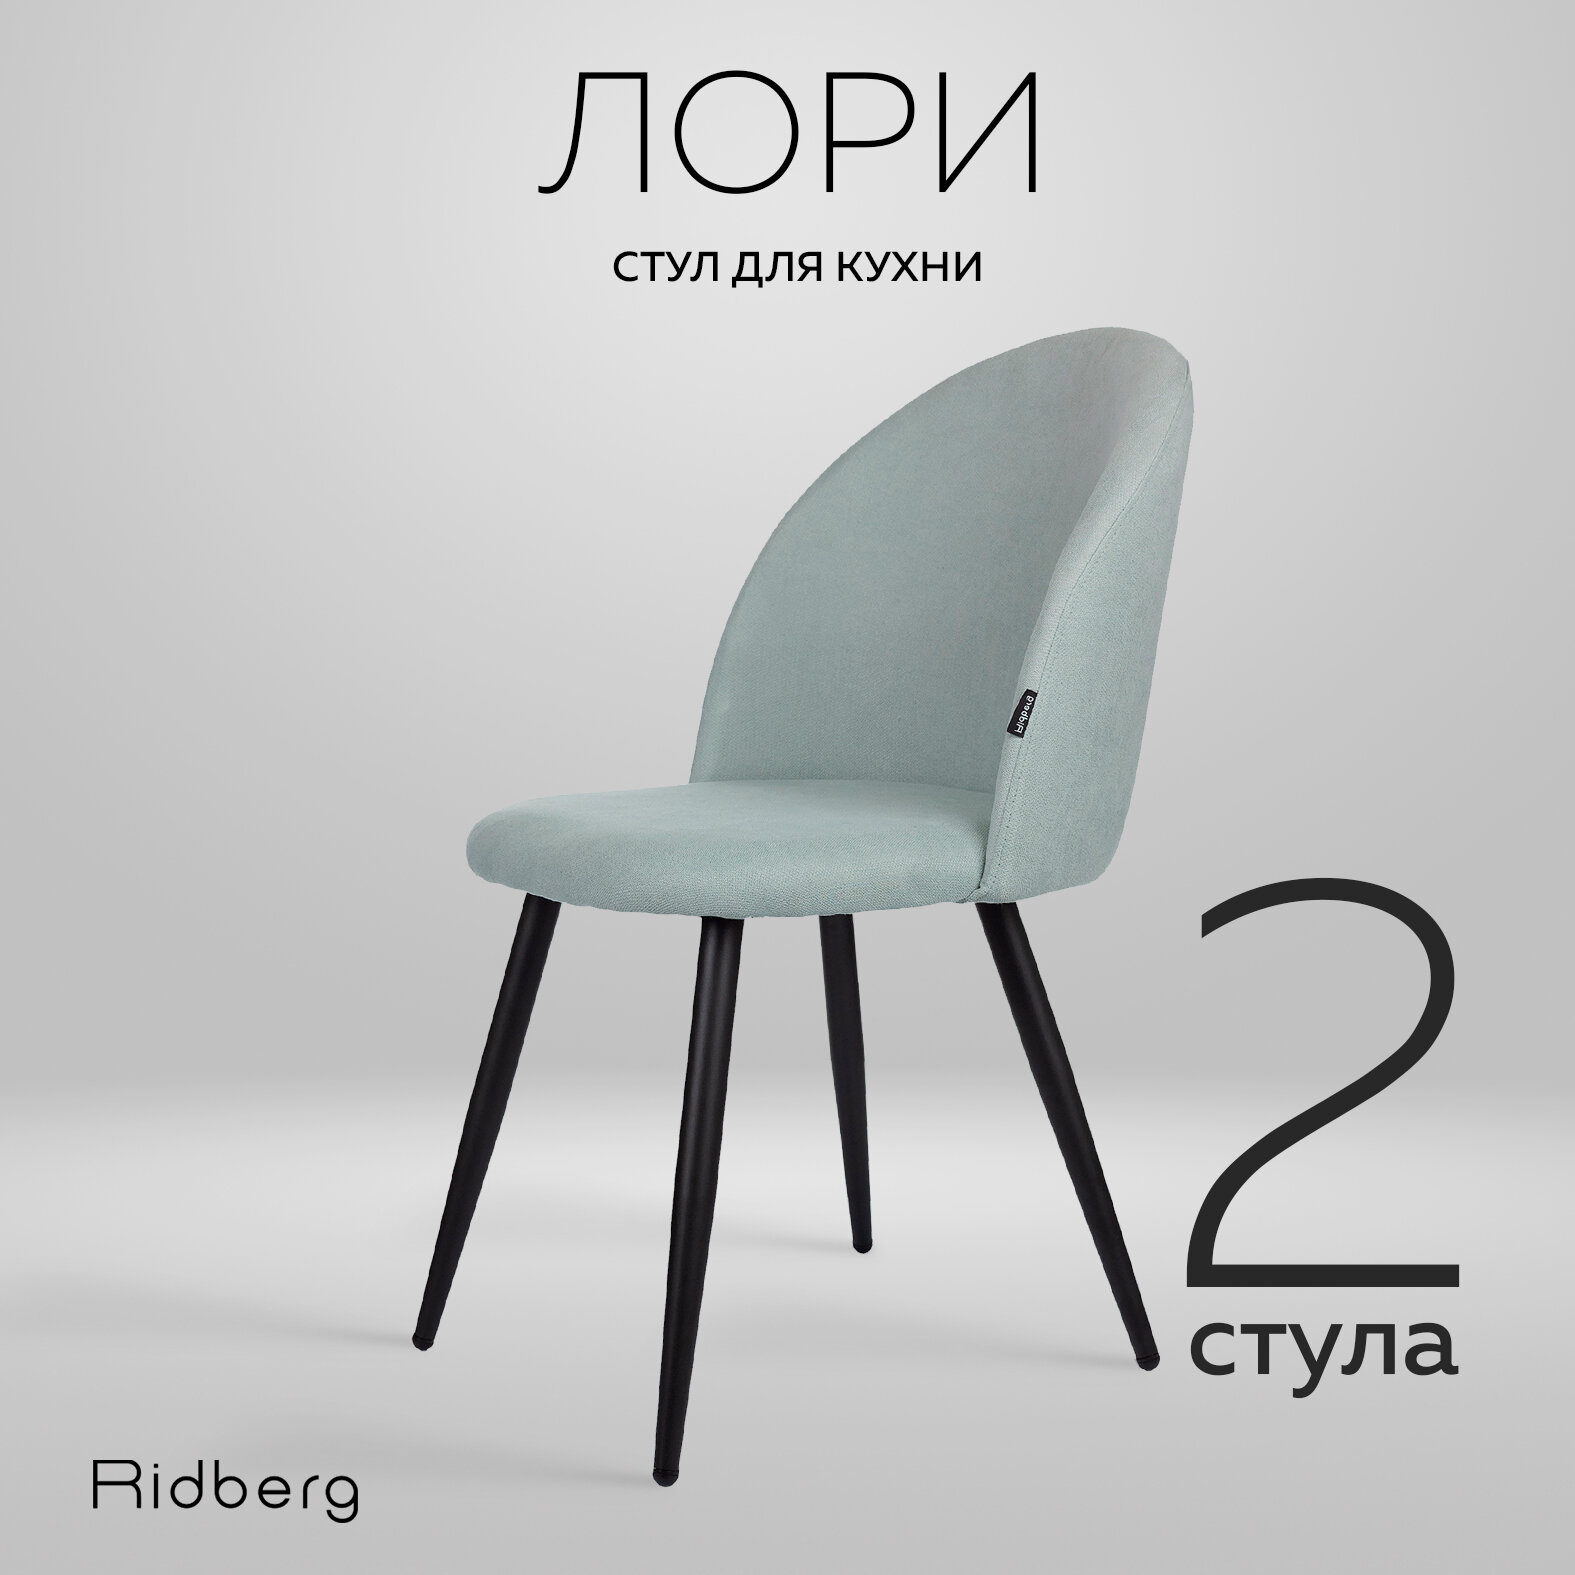 Комплект стульев для кухни и гостиной Ridberg Лори Wool, голубой, для дома, обеденный стул мягкий с боковой поддержкой спины, 2 шт